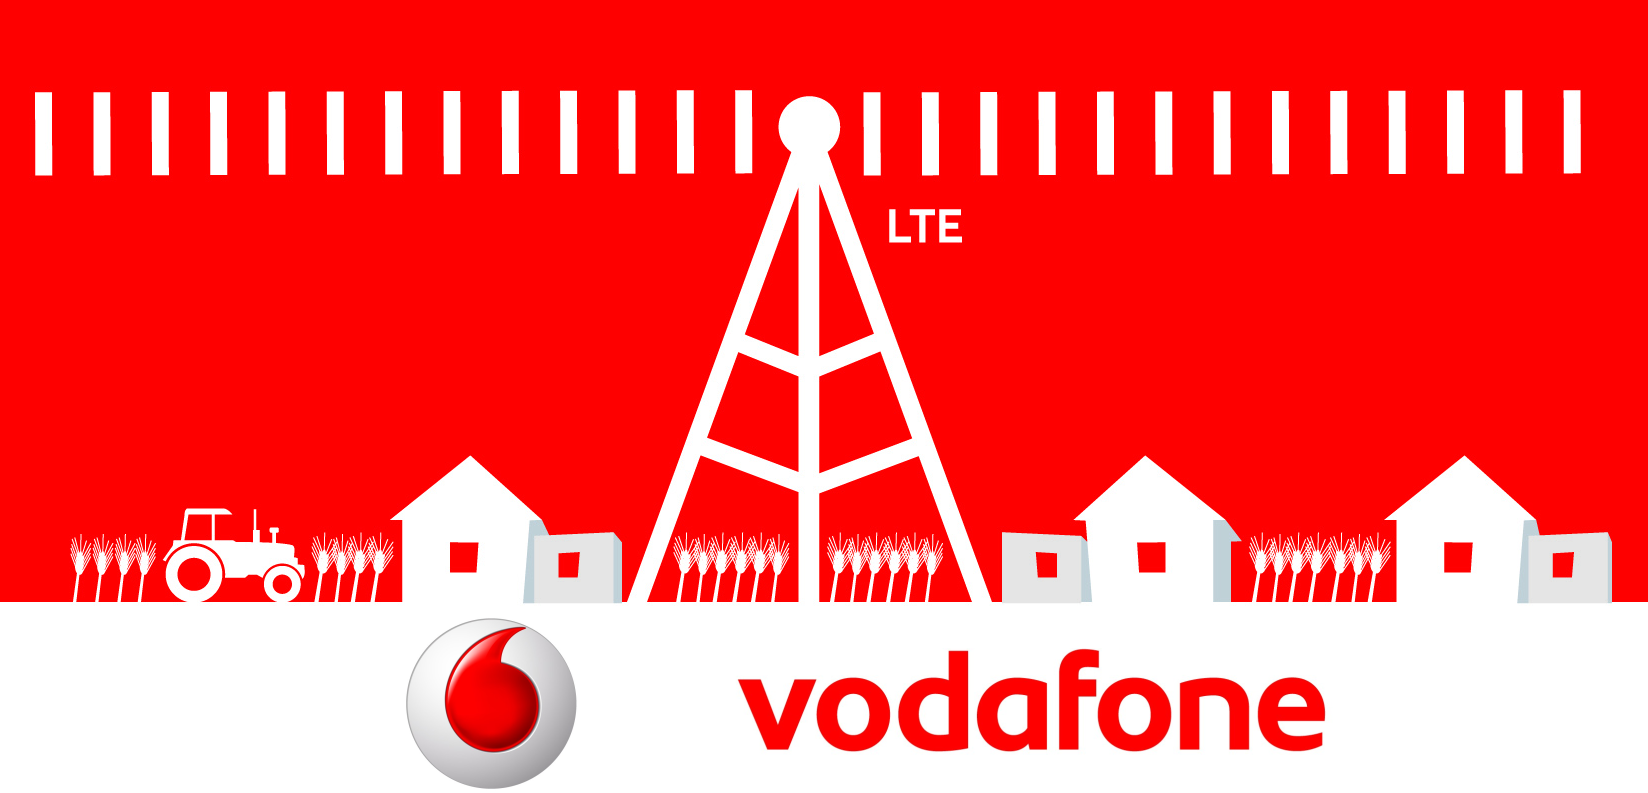 Neue Vodafone-Tarife buchen automatisch Volumen nach.